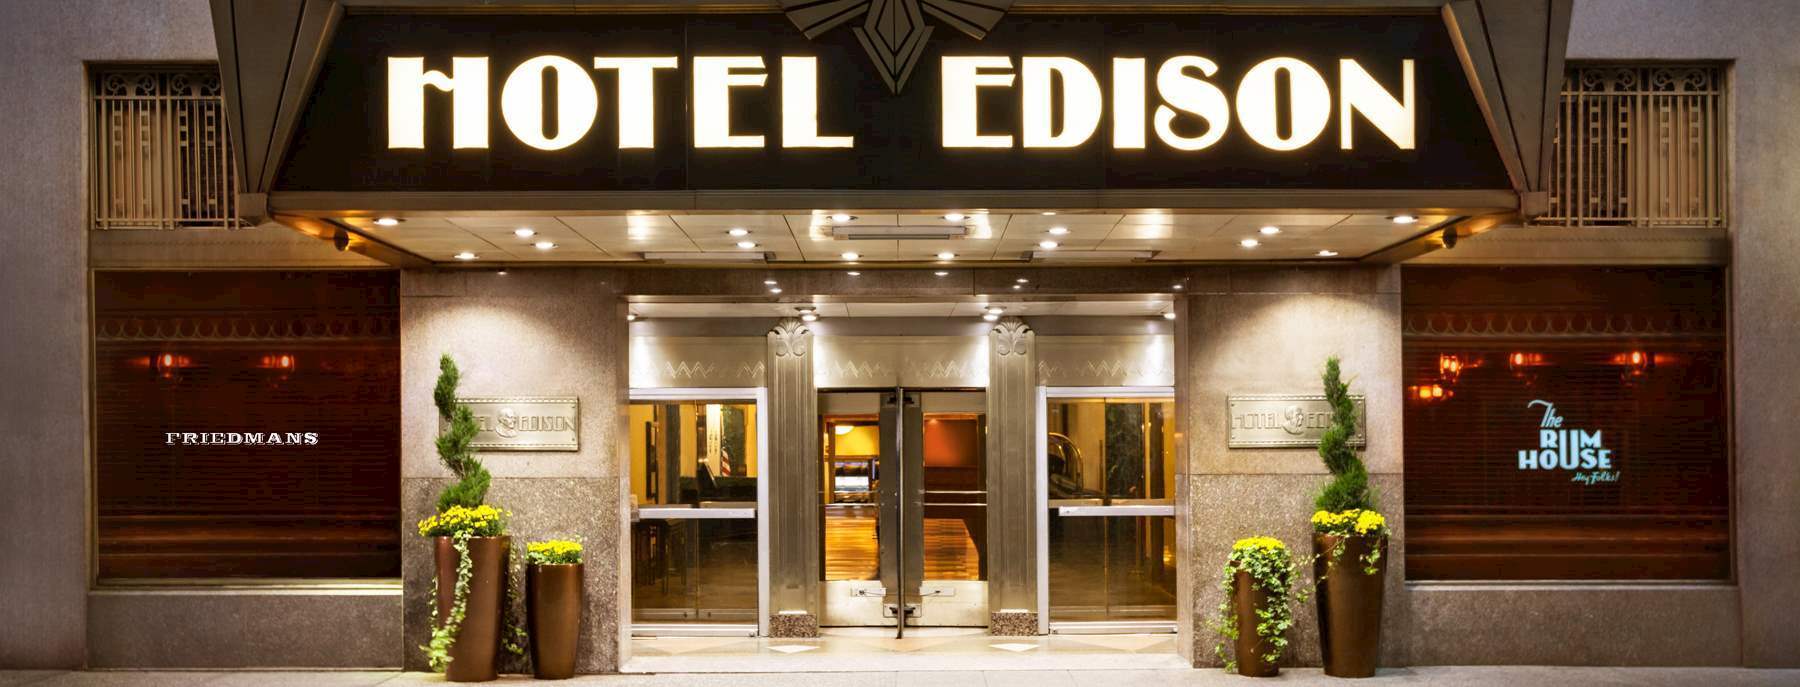 Hotel Edison Newyork 